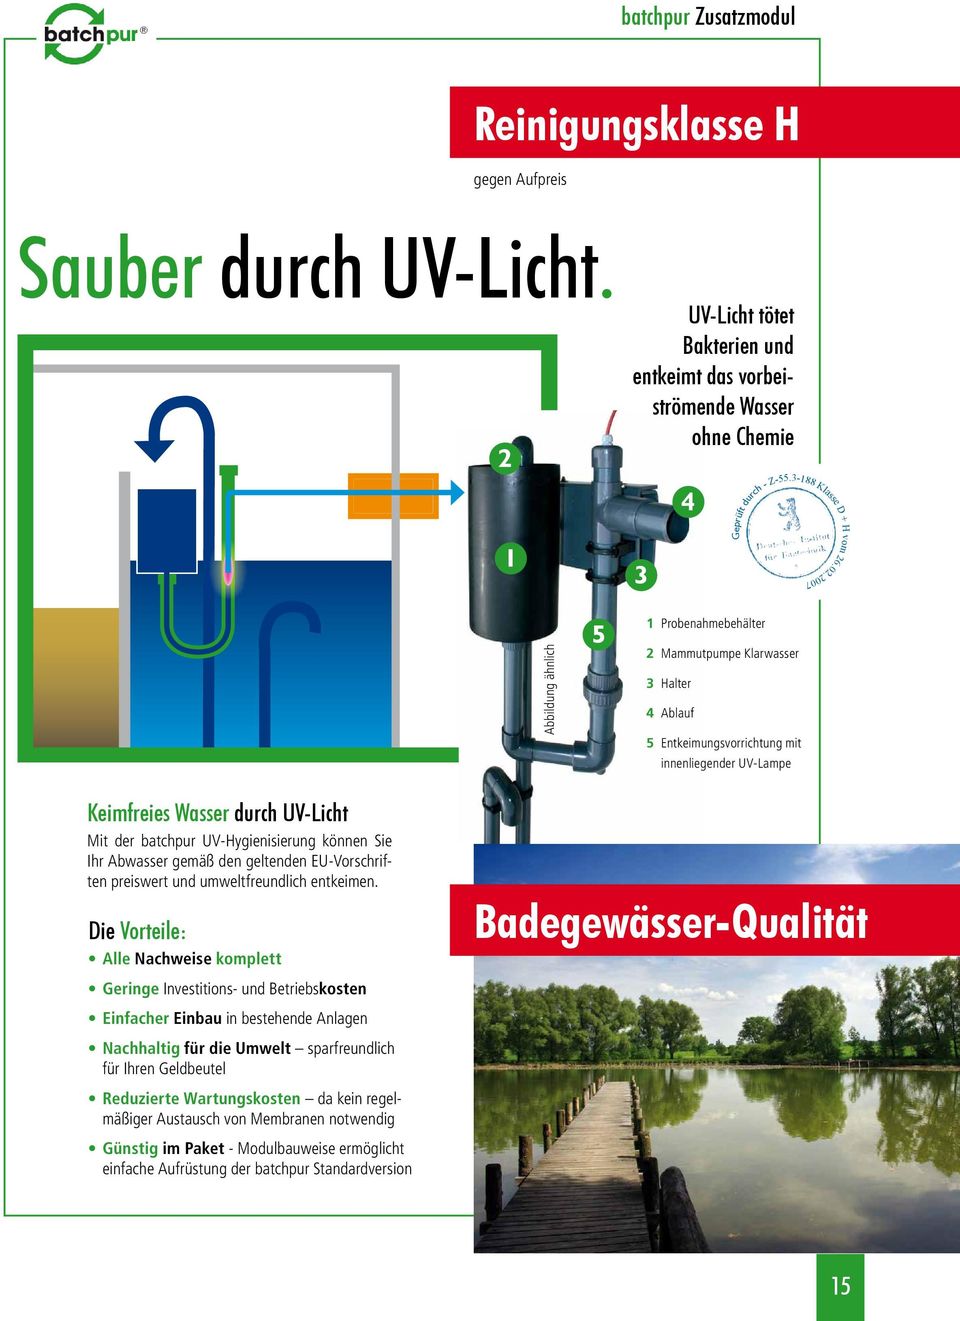 innenliegender UV-Lampe Keimfreies Wasser durch UV-Licht Mit der batchpur UV-Hygienisierung können Sie Ihr Abwasser gemäß den geltenden EU-Vorschriften preiswert und umweltfreundlich entkeimen.